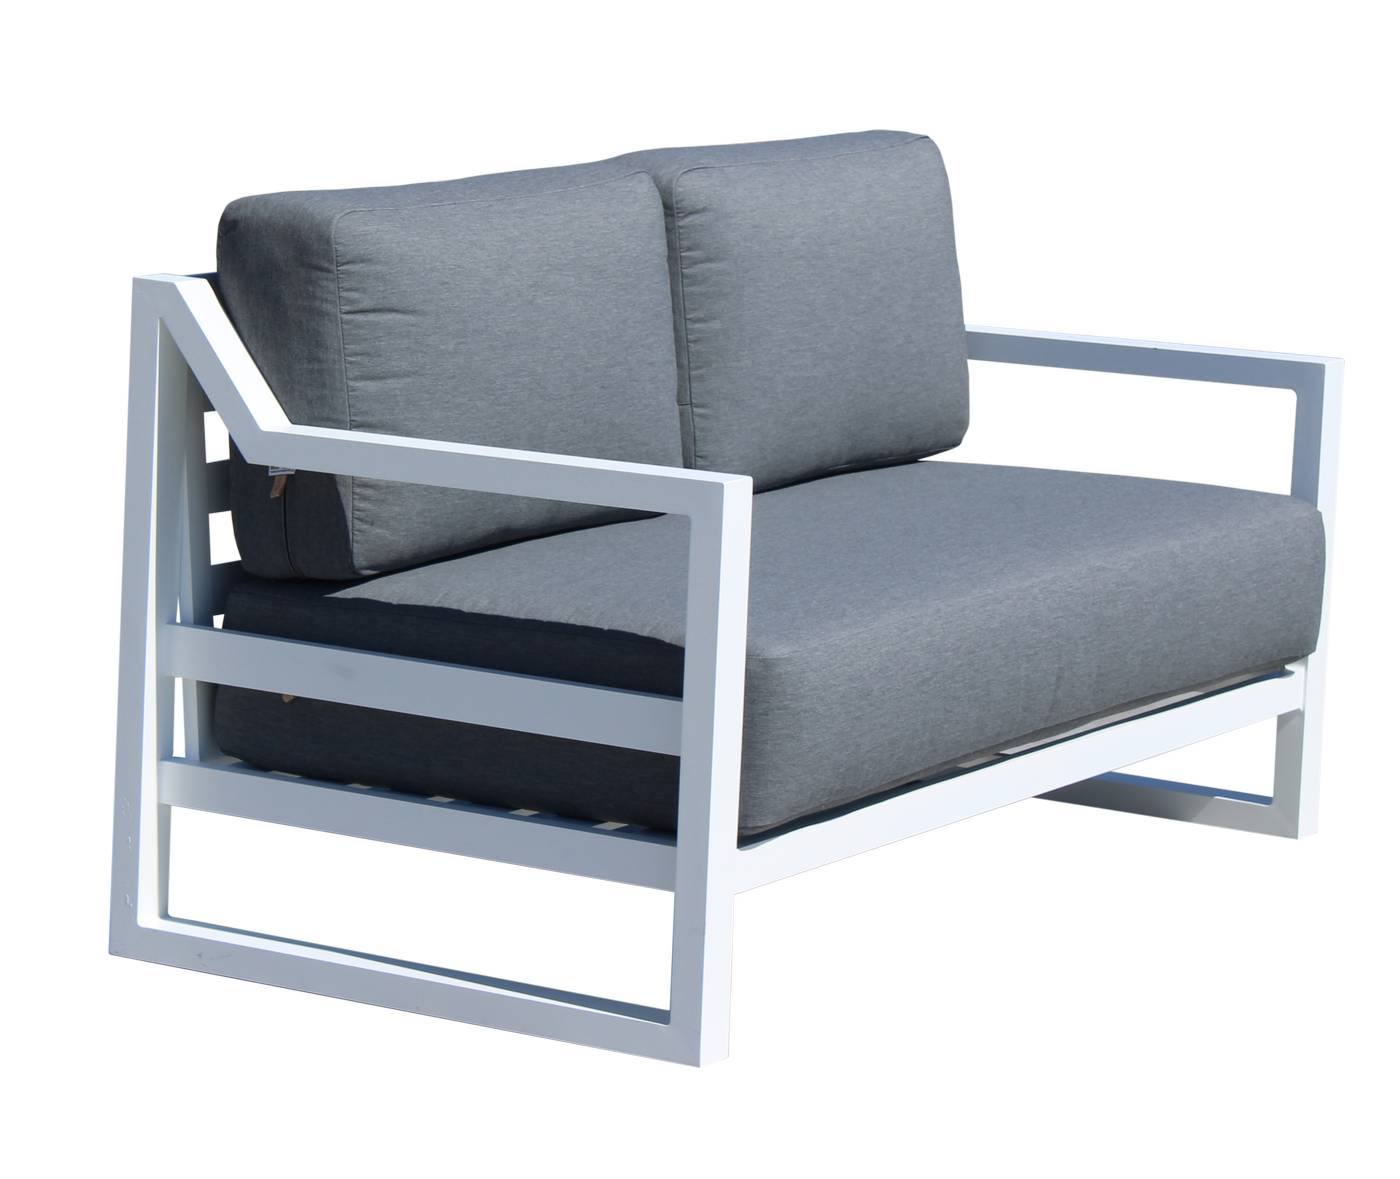 Set Aluminio Luxe Dublian-9 - Lujoso conjunto de aluminio: sofá 2 plazas + 2 sillones + mesa de centro + 2 taburetes. Color conjunto: blanco, antracita o champagne.